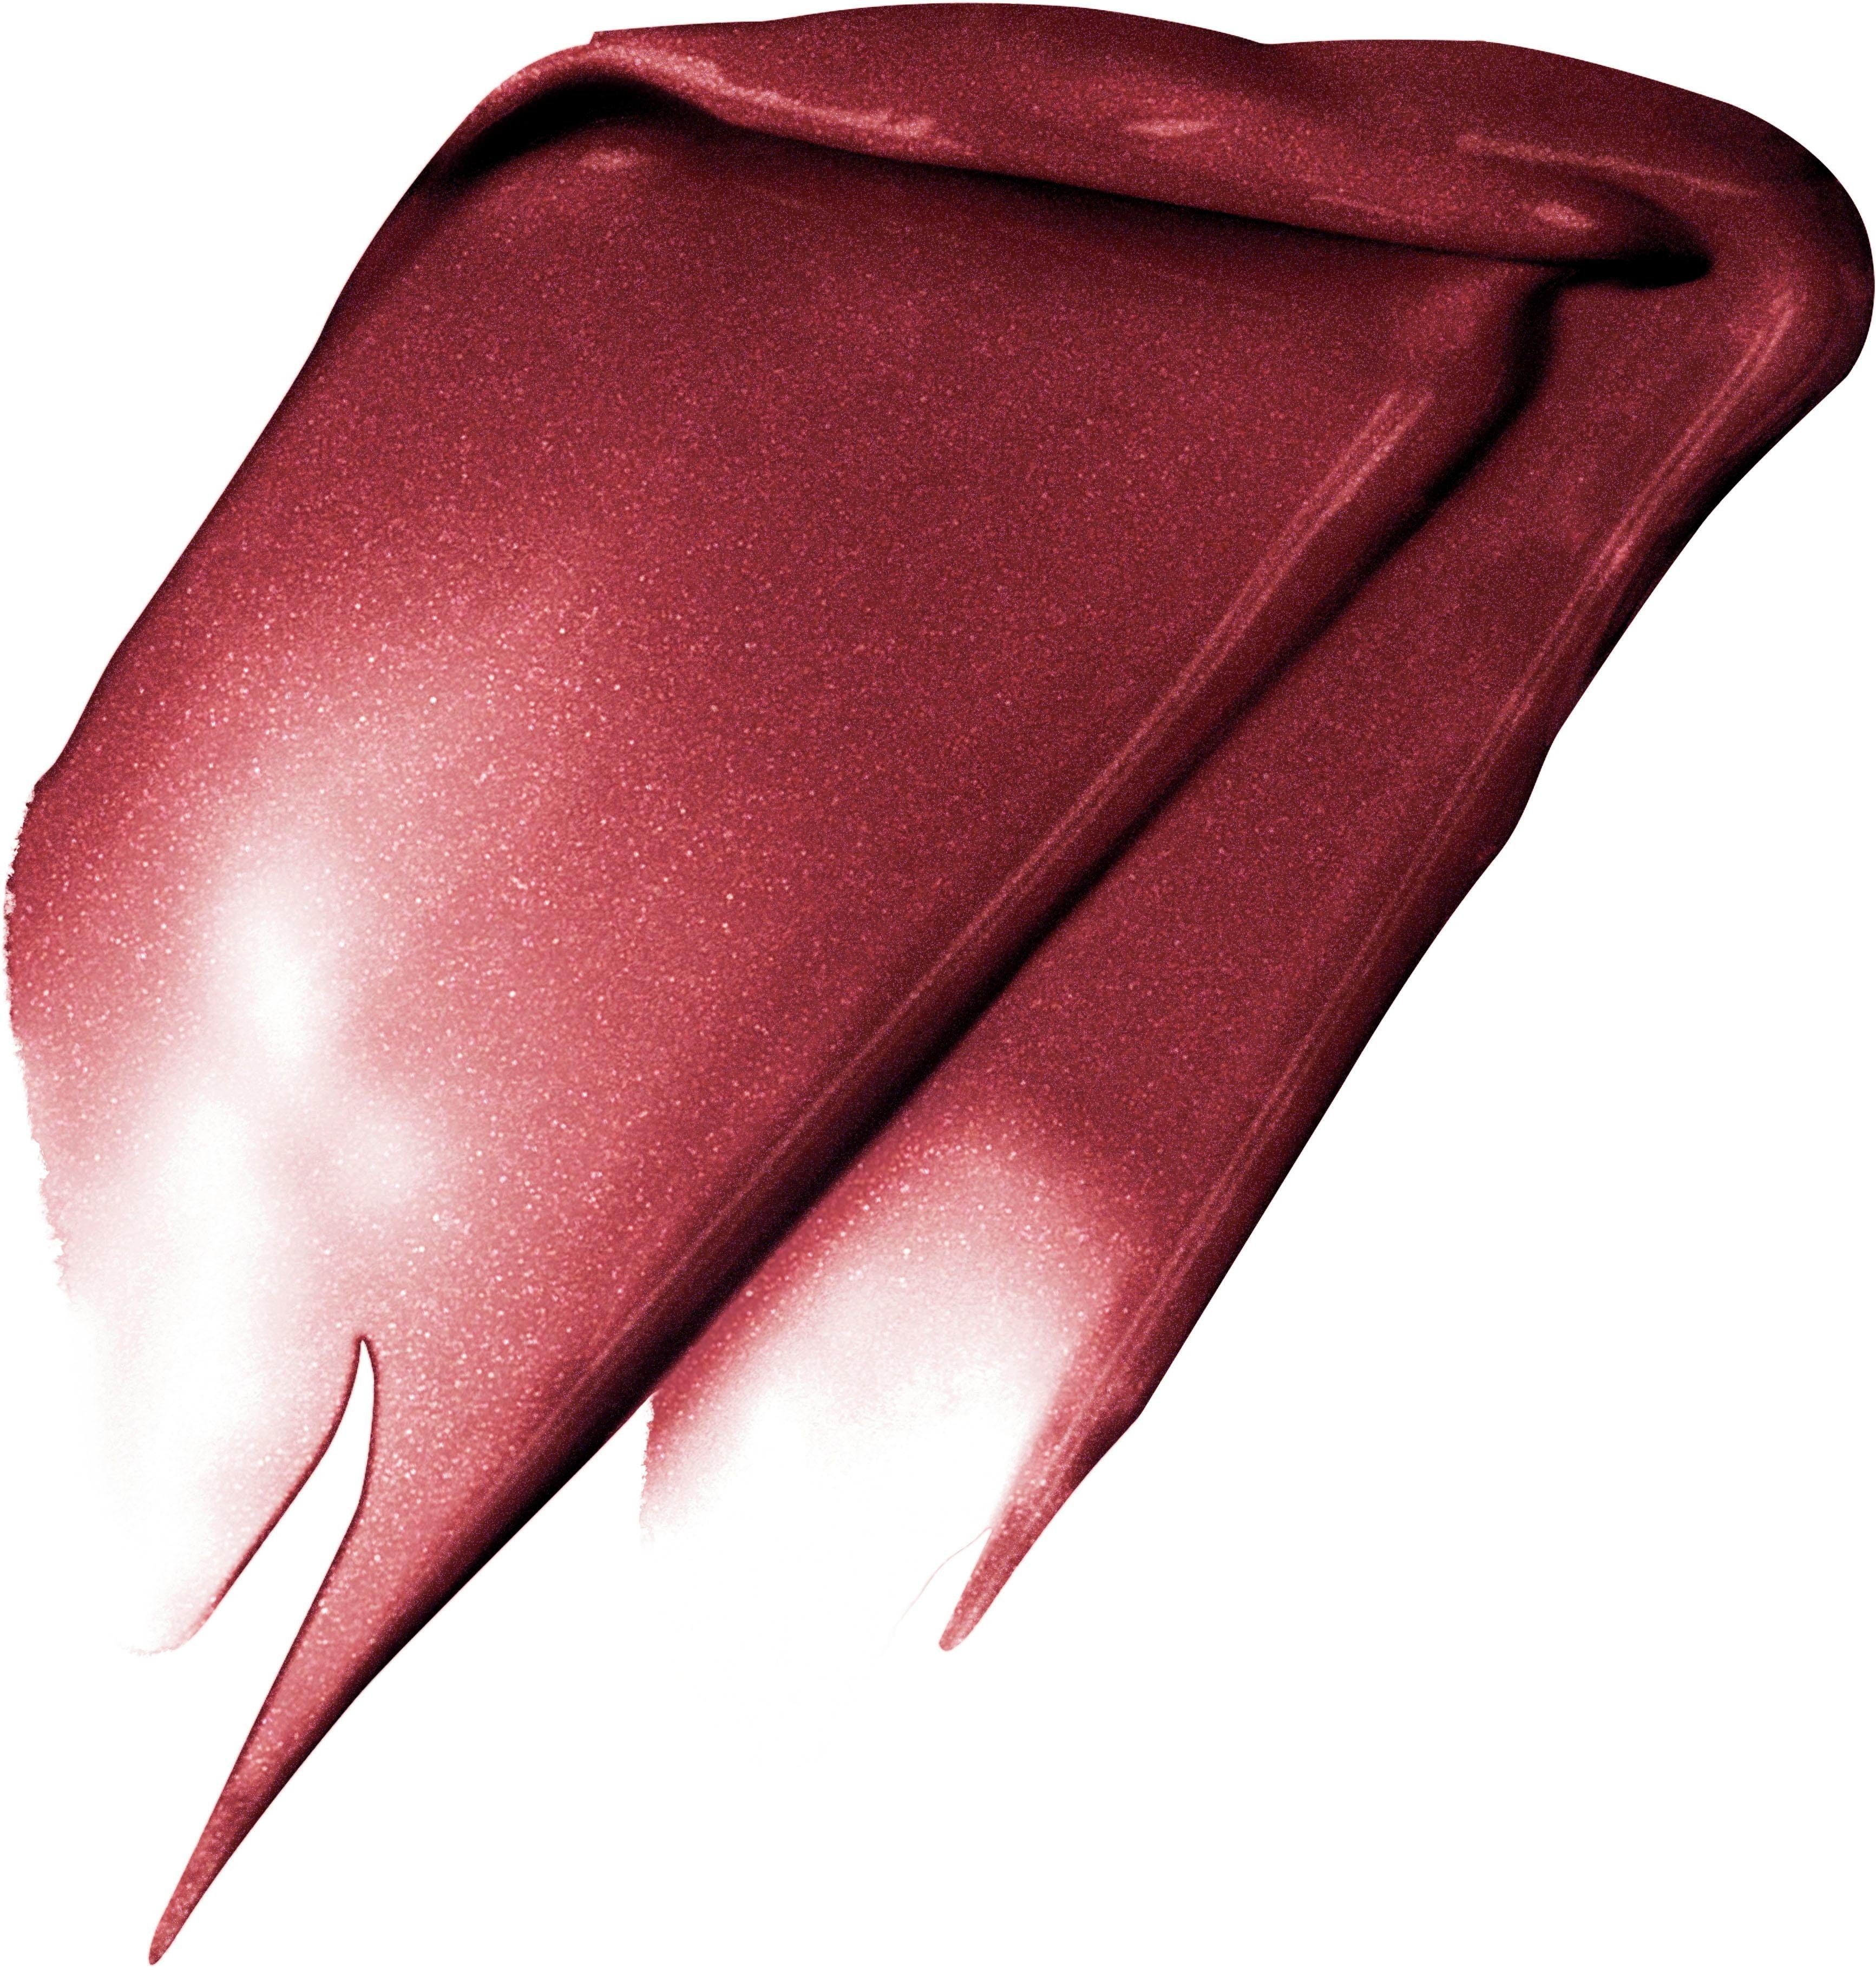 L'ORÉAL PROFESSIONNEL PARIS L'ORÉAL Metallic I 205 Signature Fascinate PARIS Lippenstift Rouge